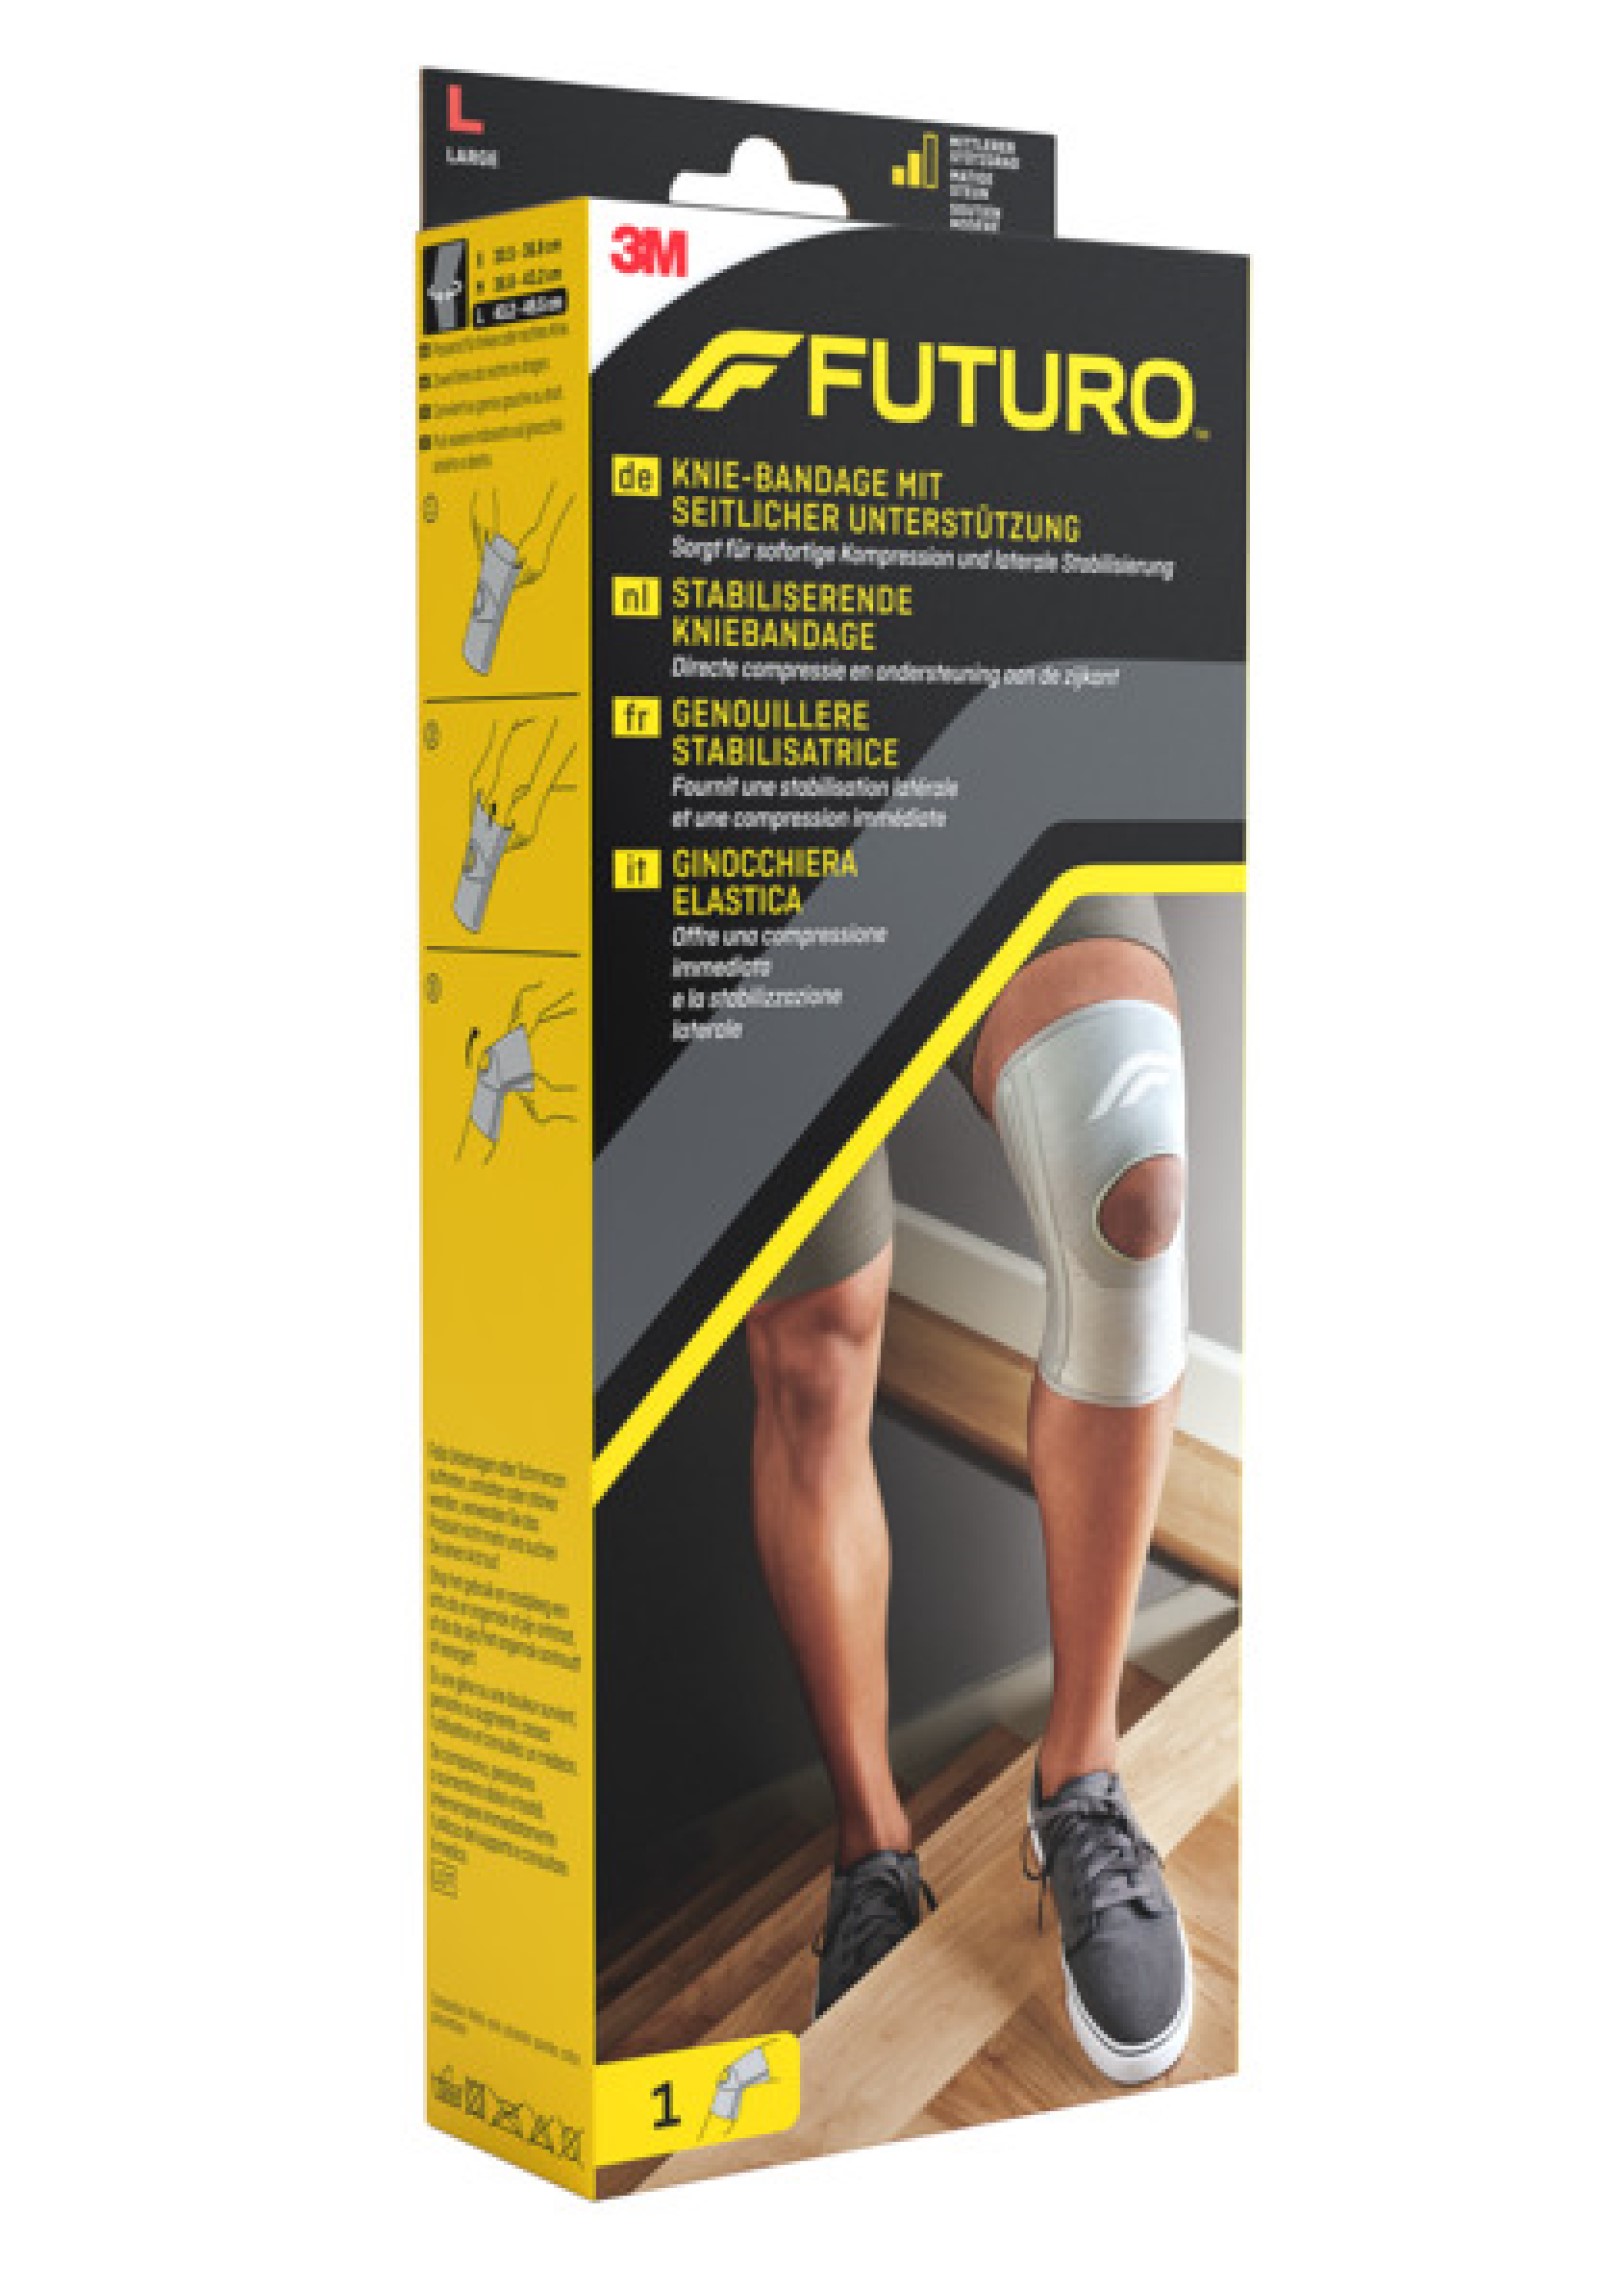 FUTURO™ Knie-Bandage mit seitlicher Unterstützung 46165, L (43.2 - 49.5 cm)